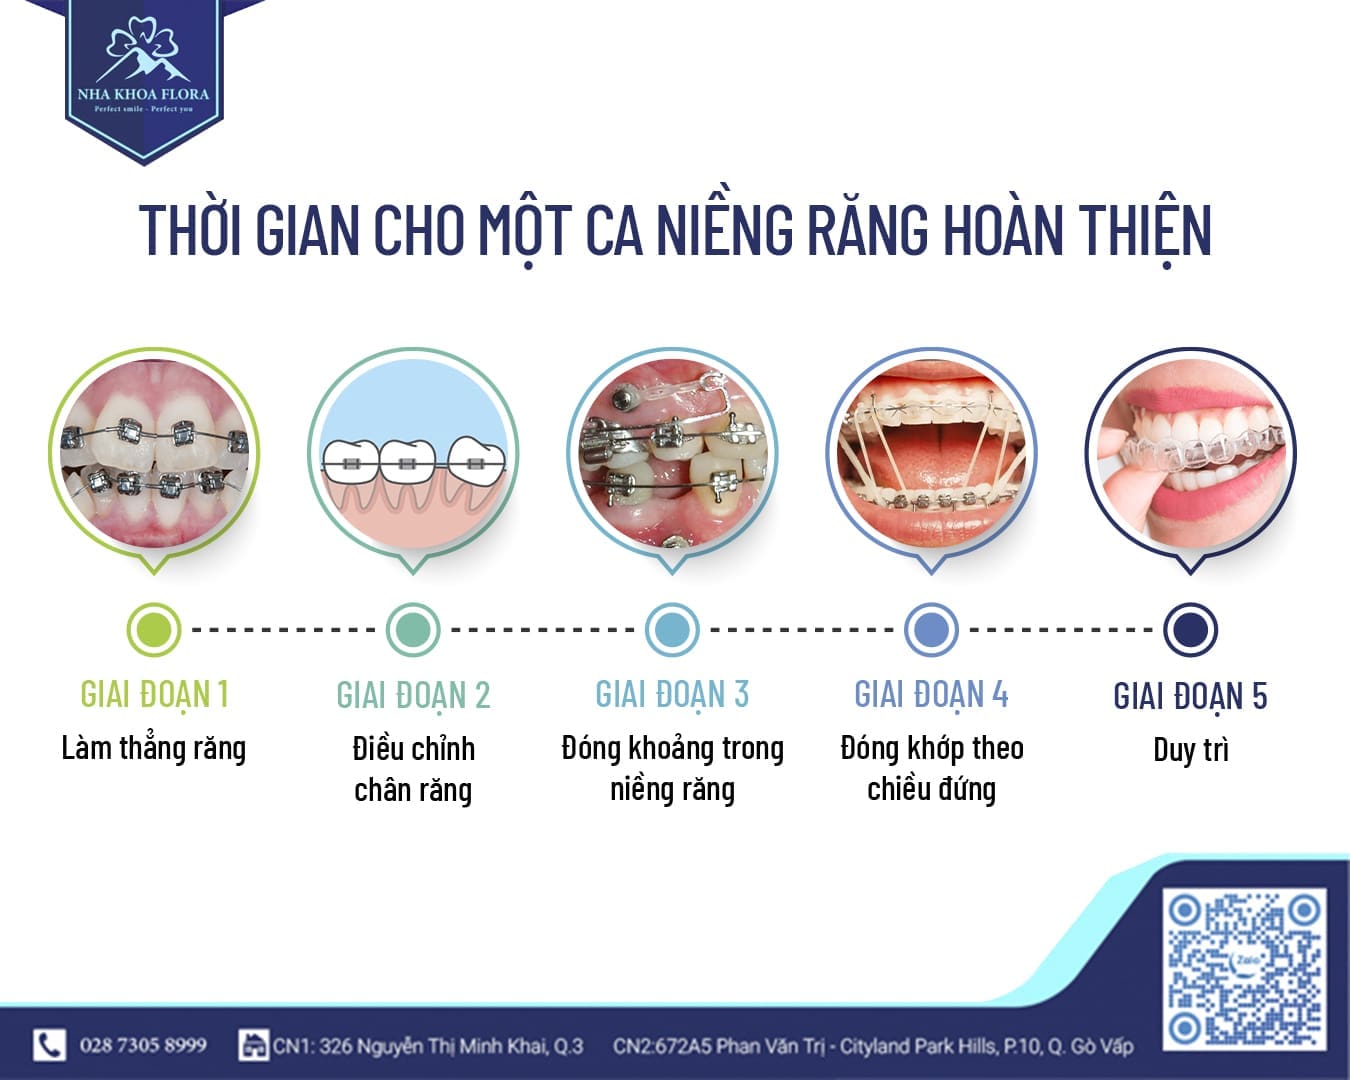 Các giai đoạn trong quy trình niềng răng mắc cài